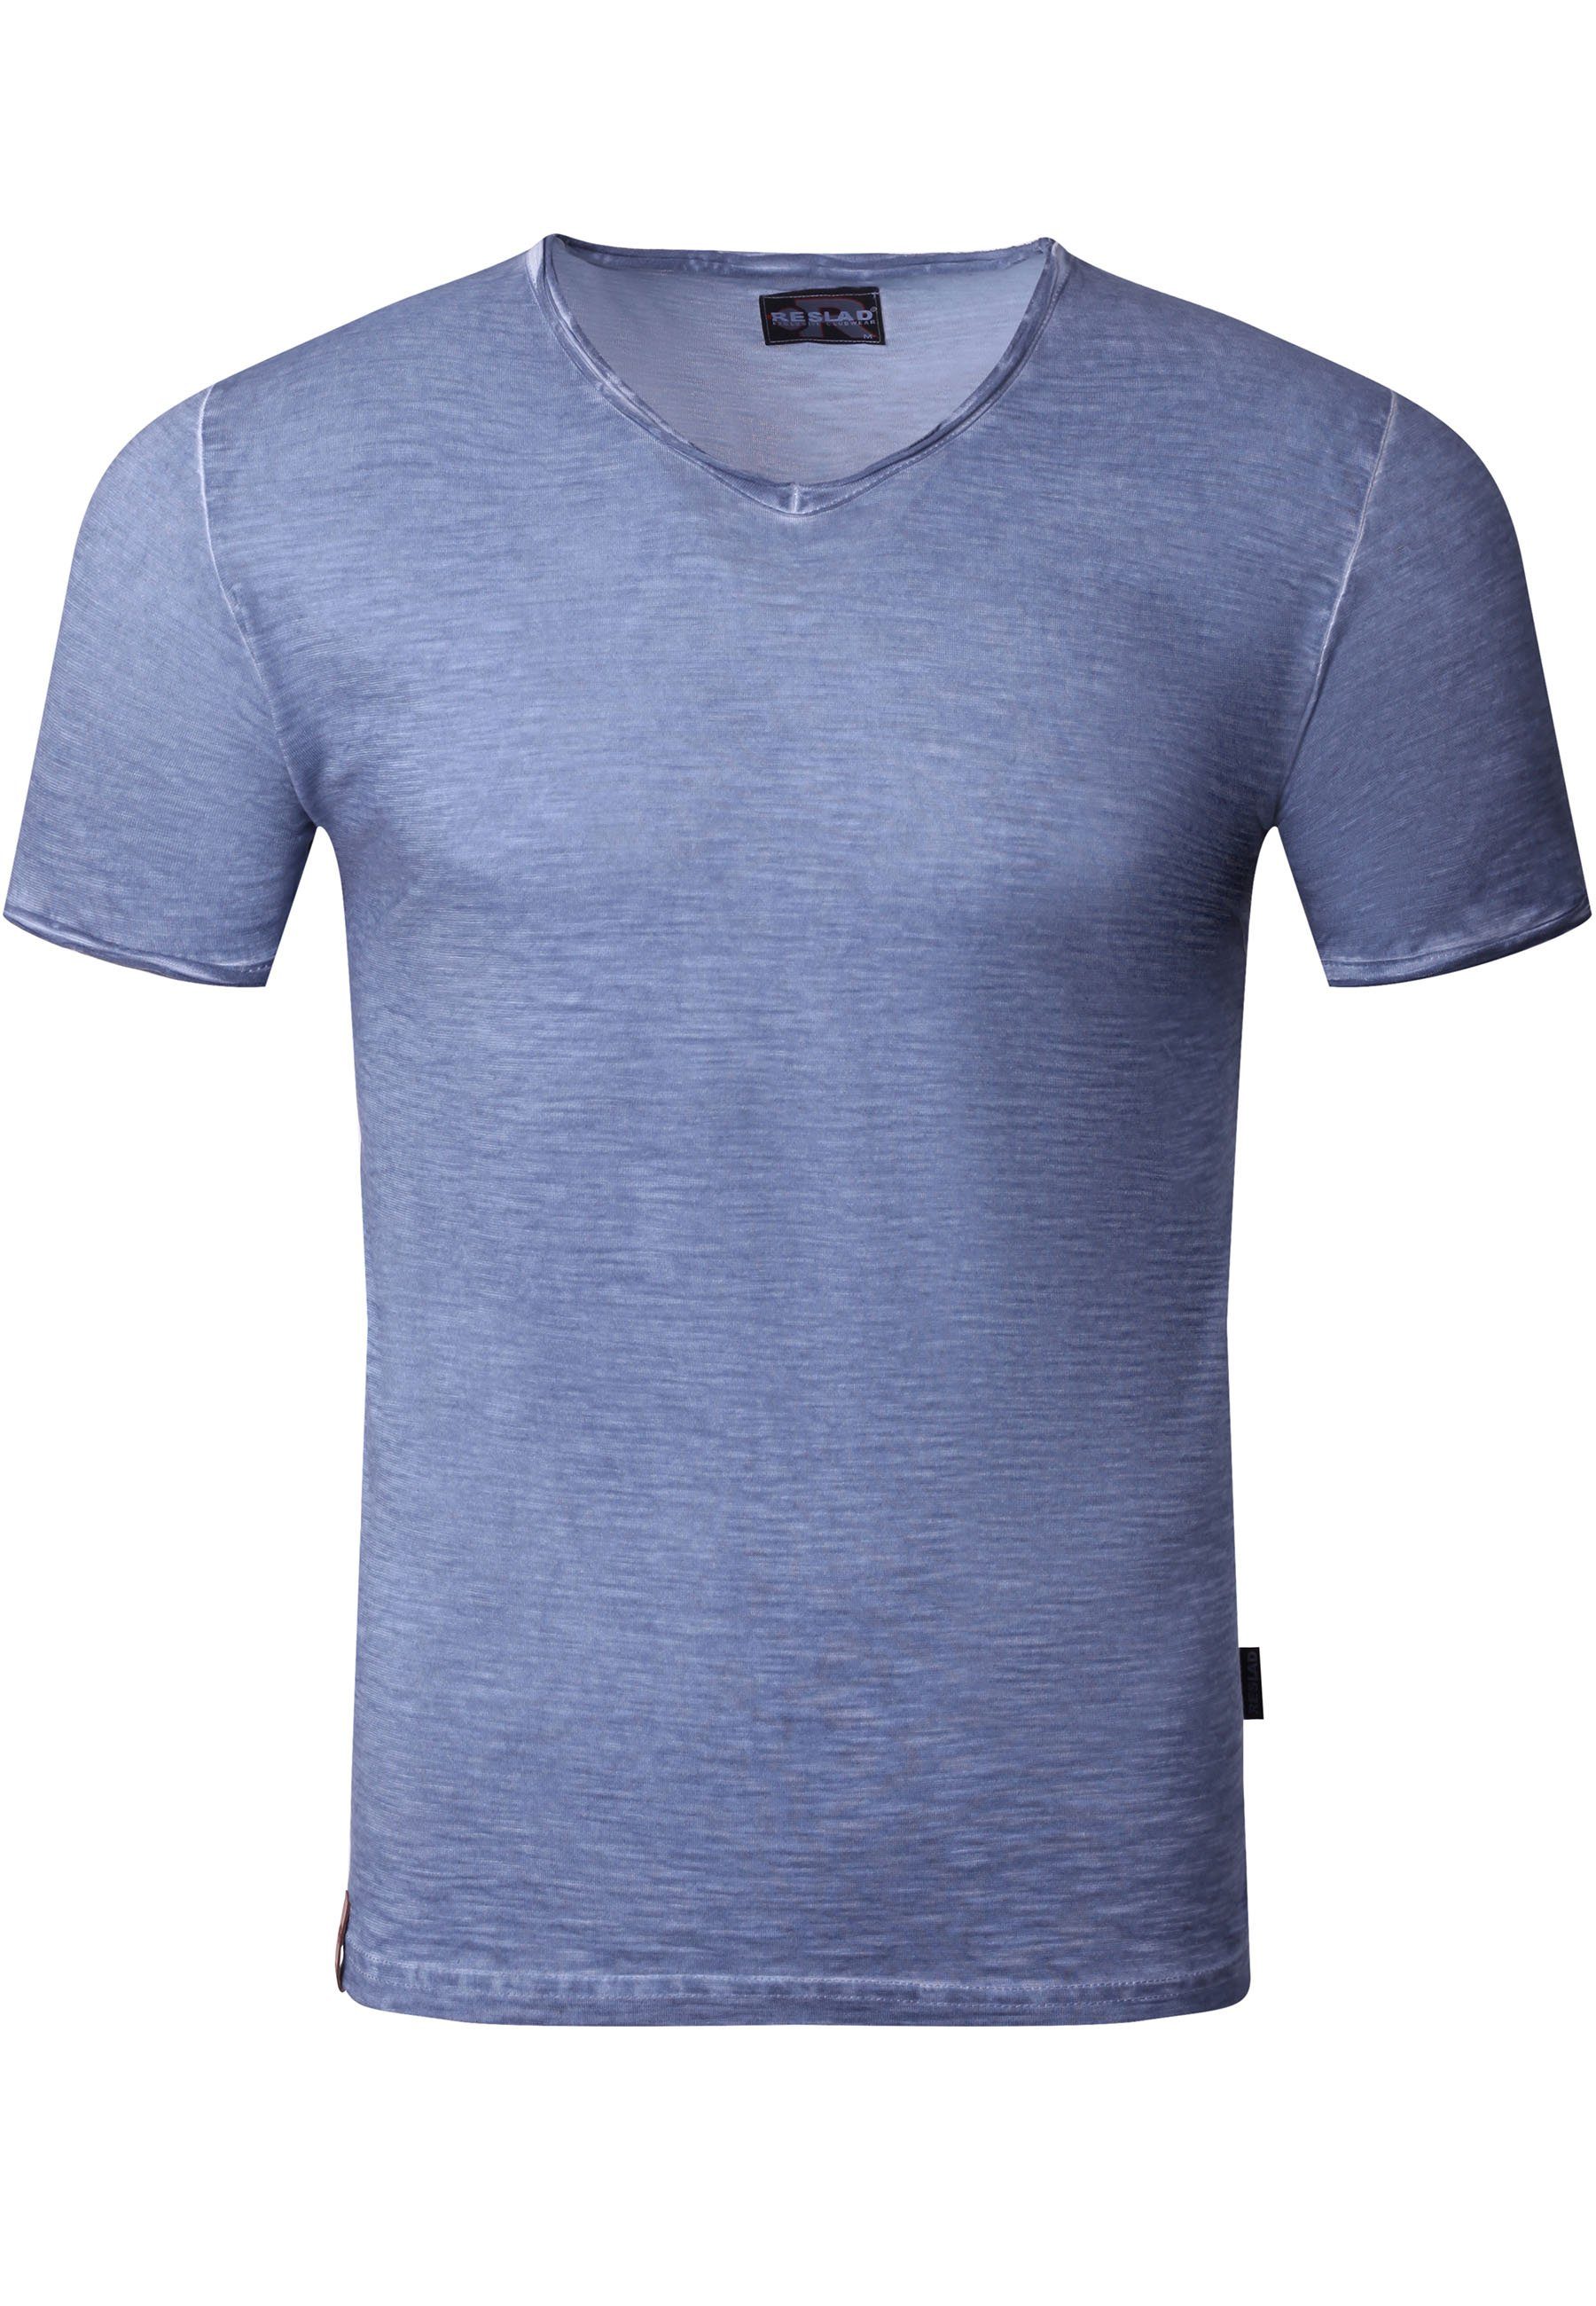 Reslad T-Shirt Reslad T-Shirt Herren V-Ausschnitt verwaschen Vintage Optik Shirt (1-tlg) V-Neck Vintage Style Männer Shirt indigo-blau